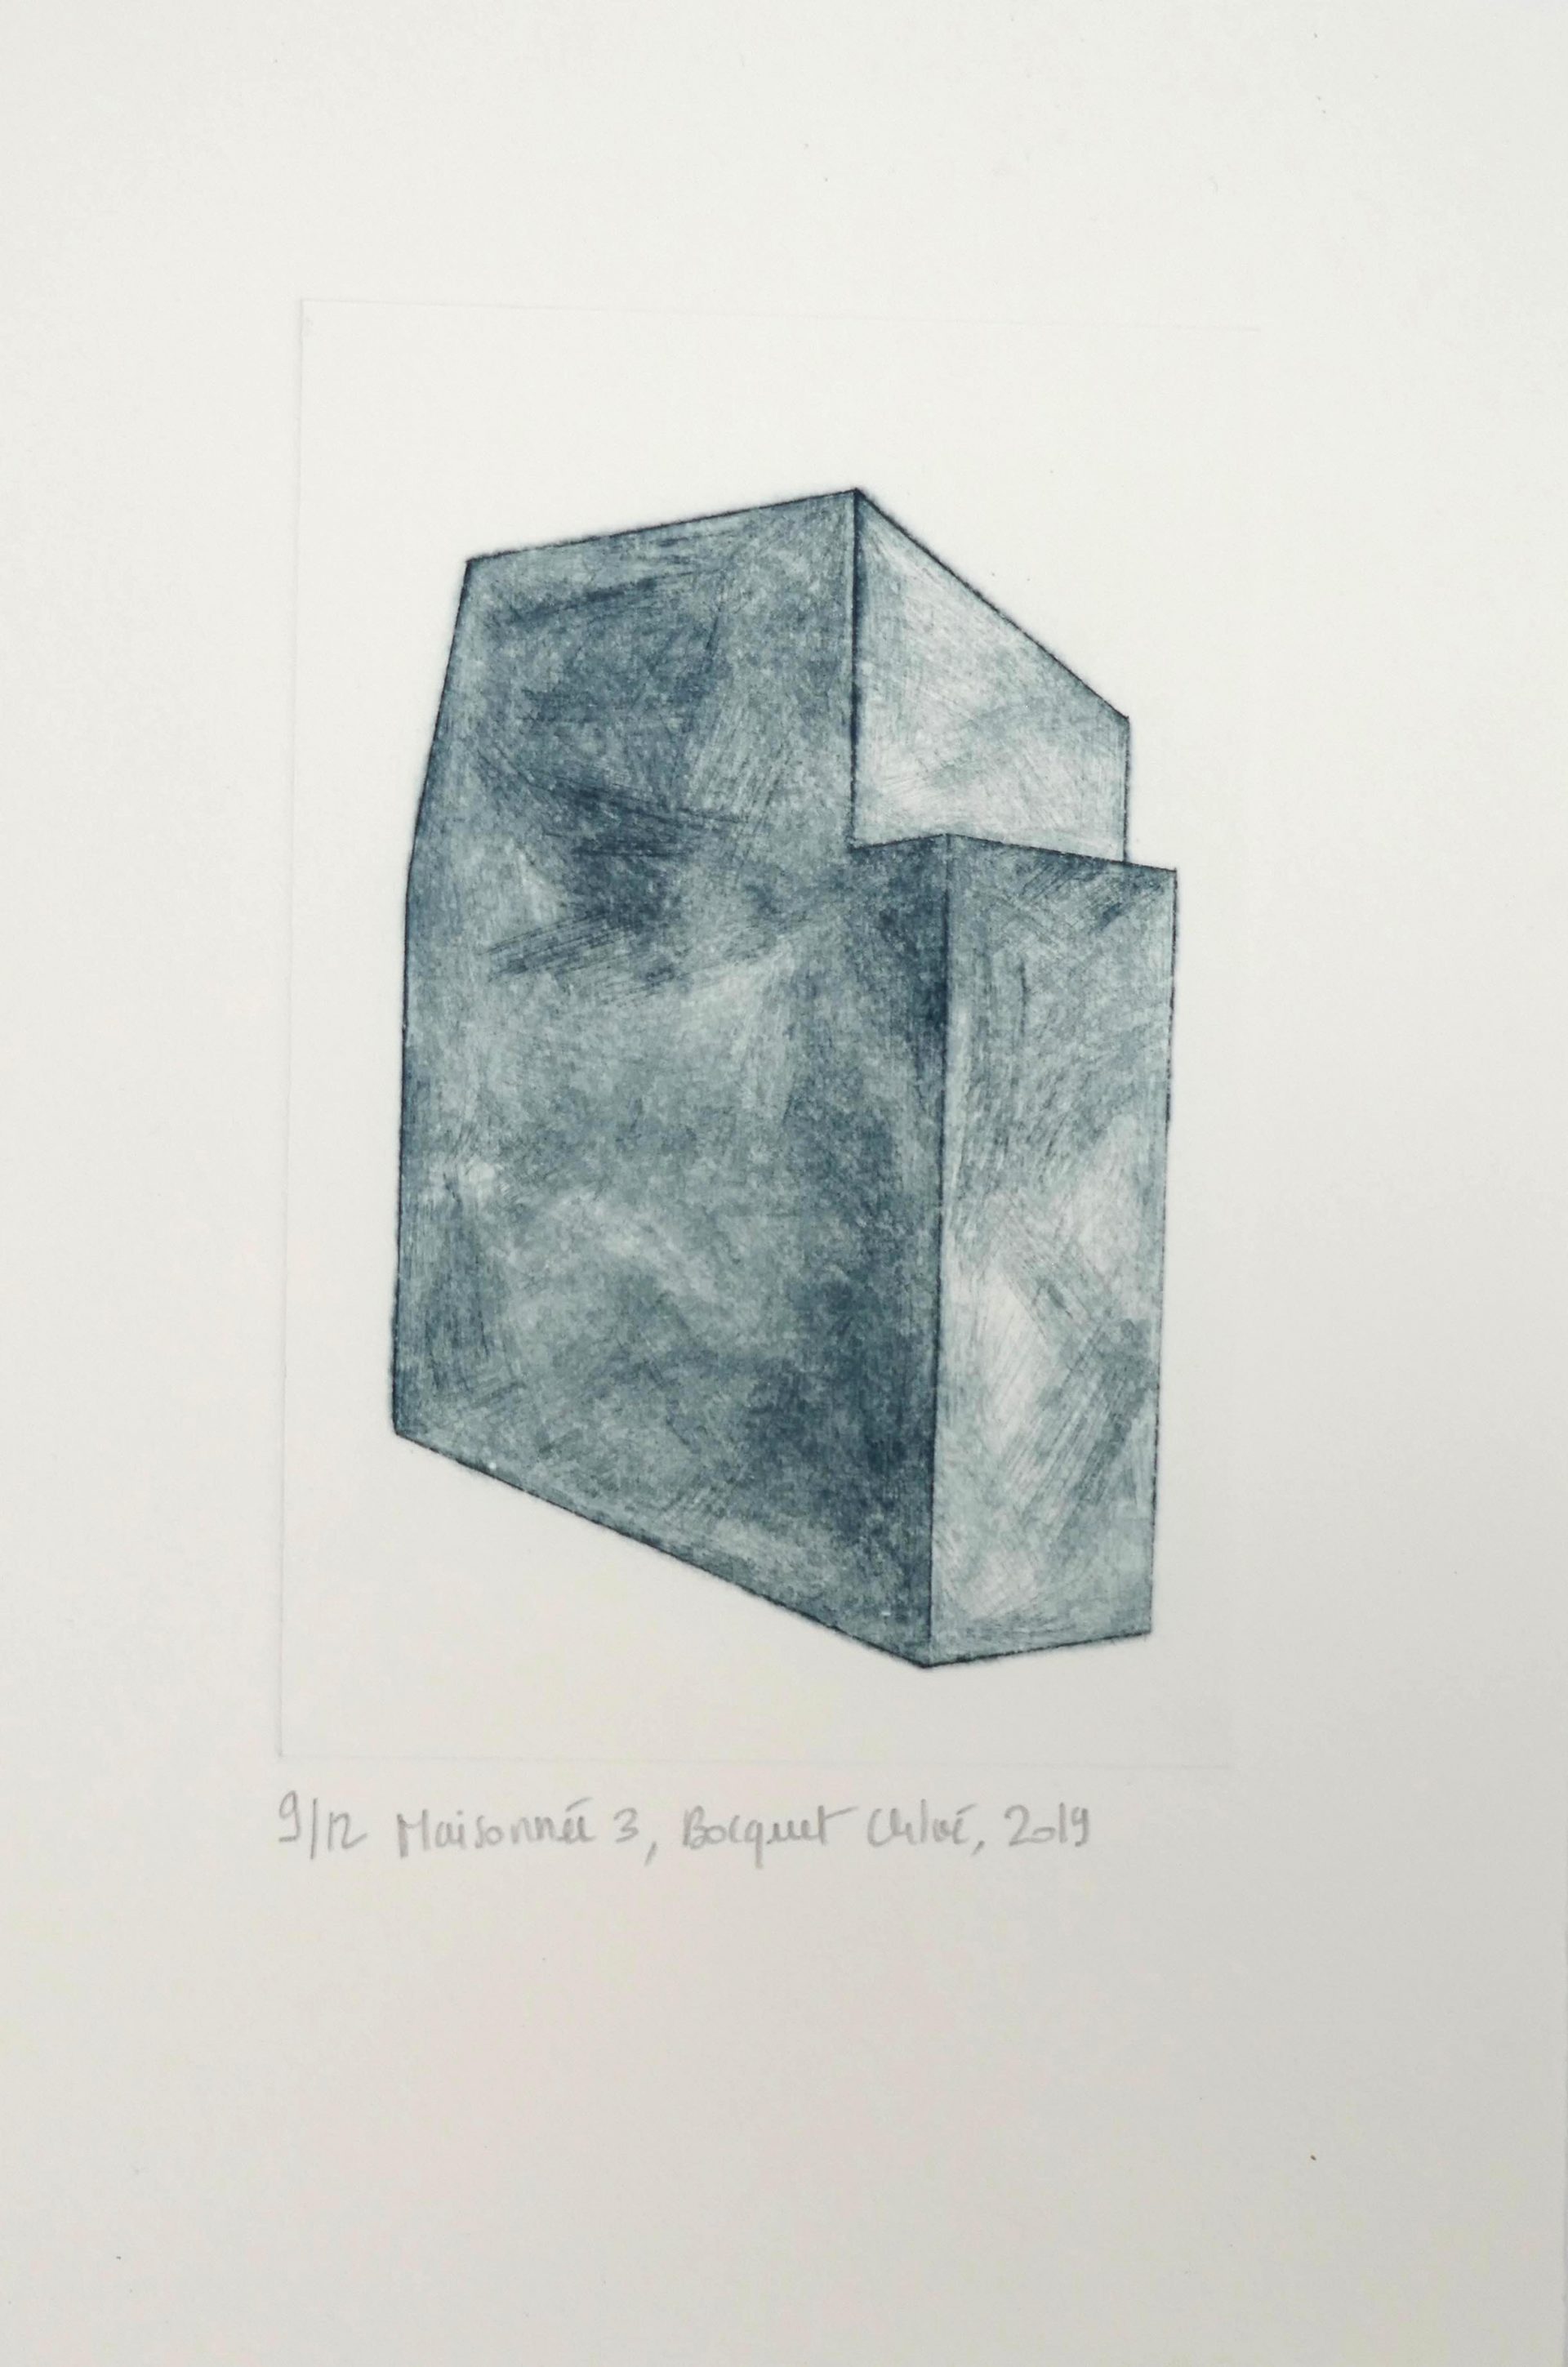 Maisonnée 3, 2019, drypoint, image size 15x10 cm, paper size 25x16,5 cm, edition of 12